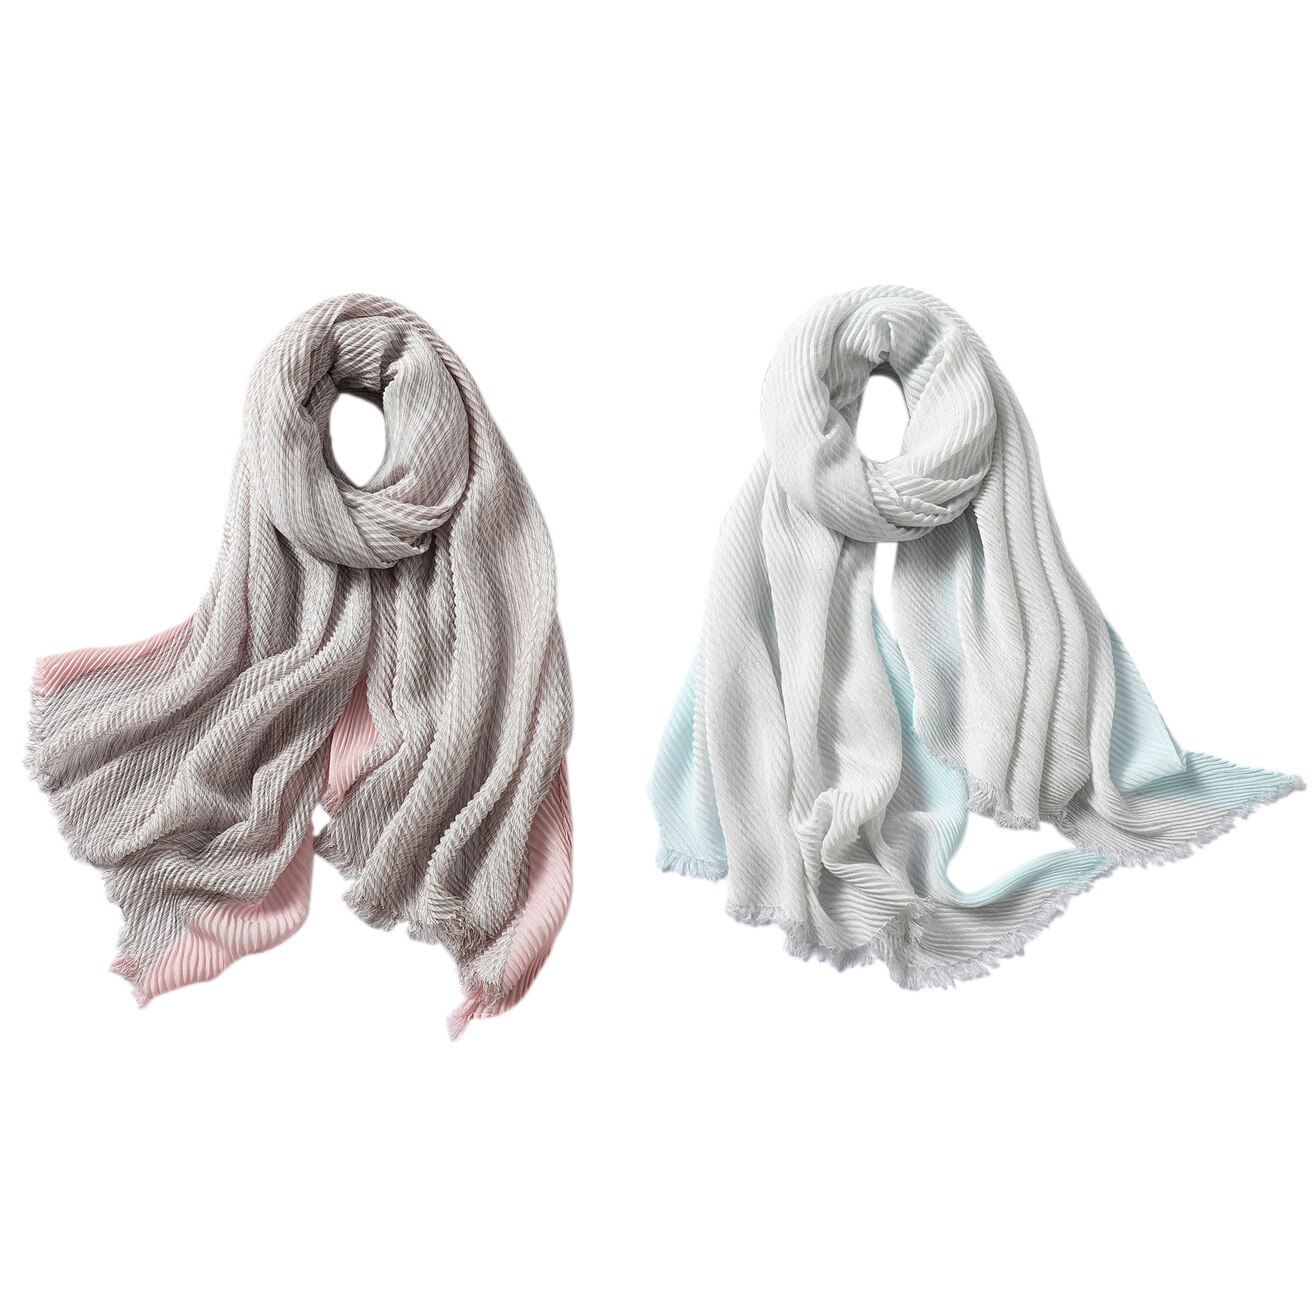 Solid Vrouwen Sjaal Crinkle Hijaabs Voor Lady Vouw Sjaals En Wraps Winter Lady Hoofdband Neck Warme Sjaals Foulard